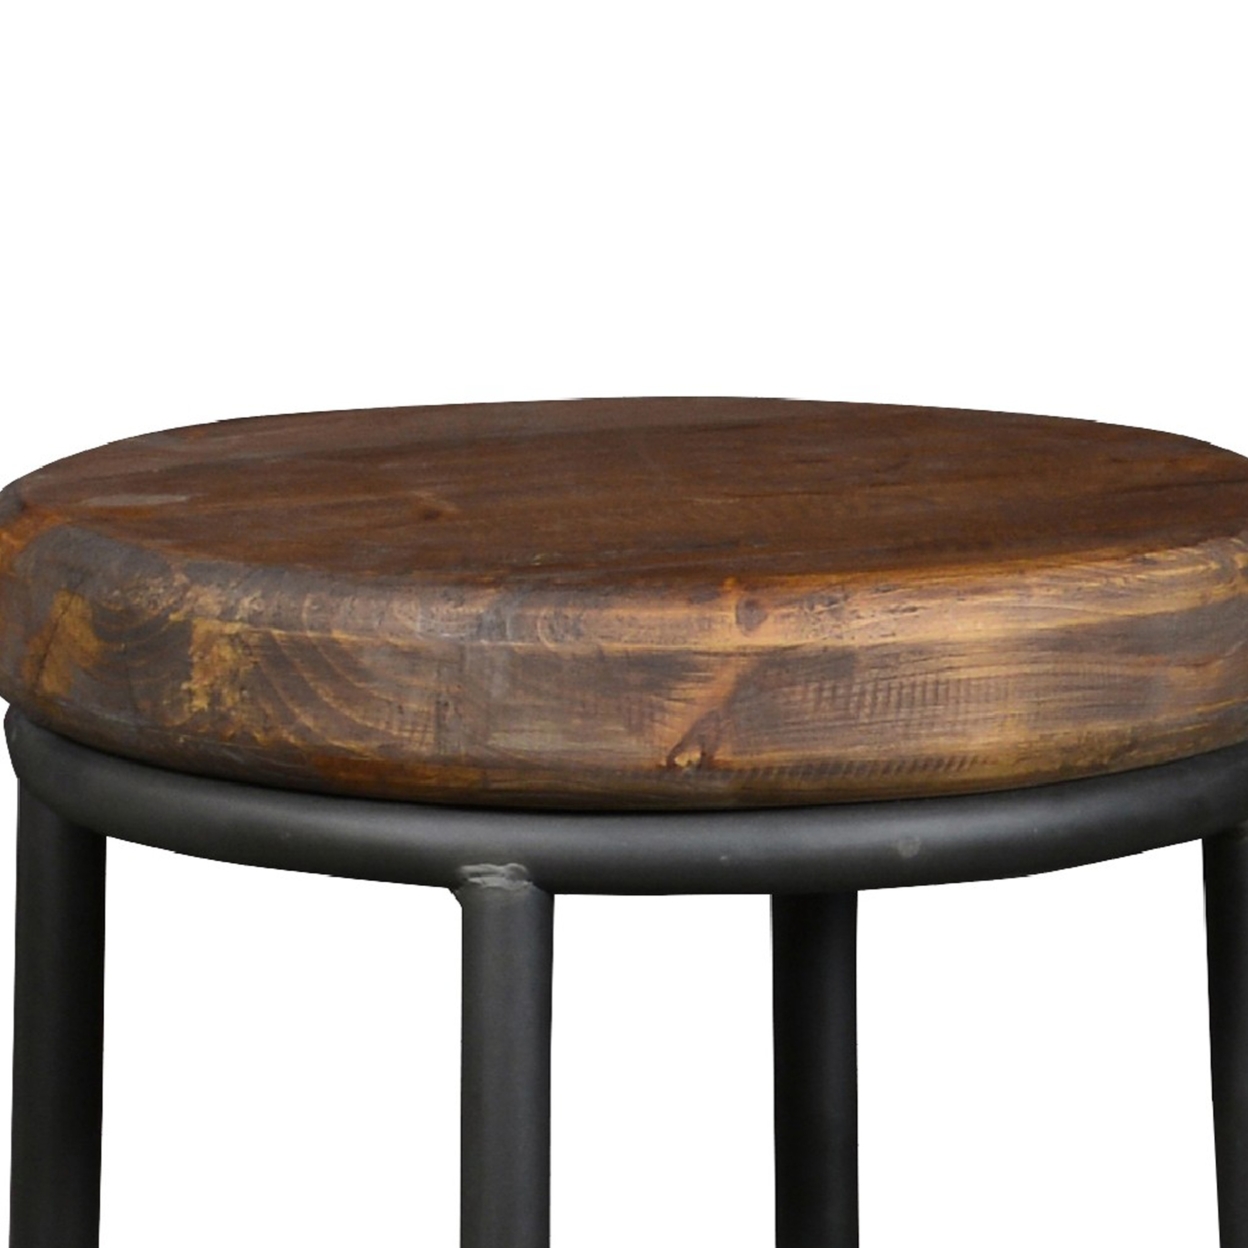 Ken 24 Inch Backless Round Counter Stool, Pine Wood Seat, Brown, Black- Saltoro Sherpi